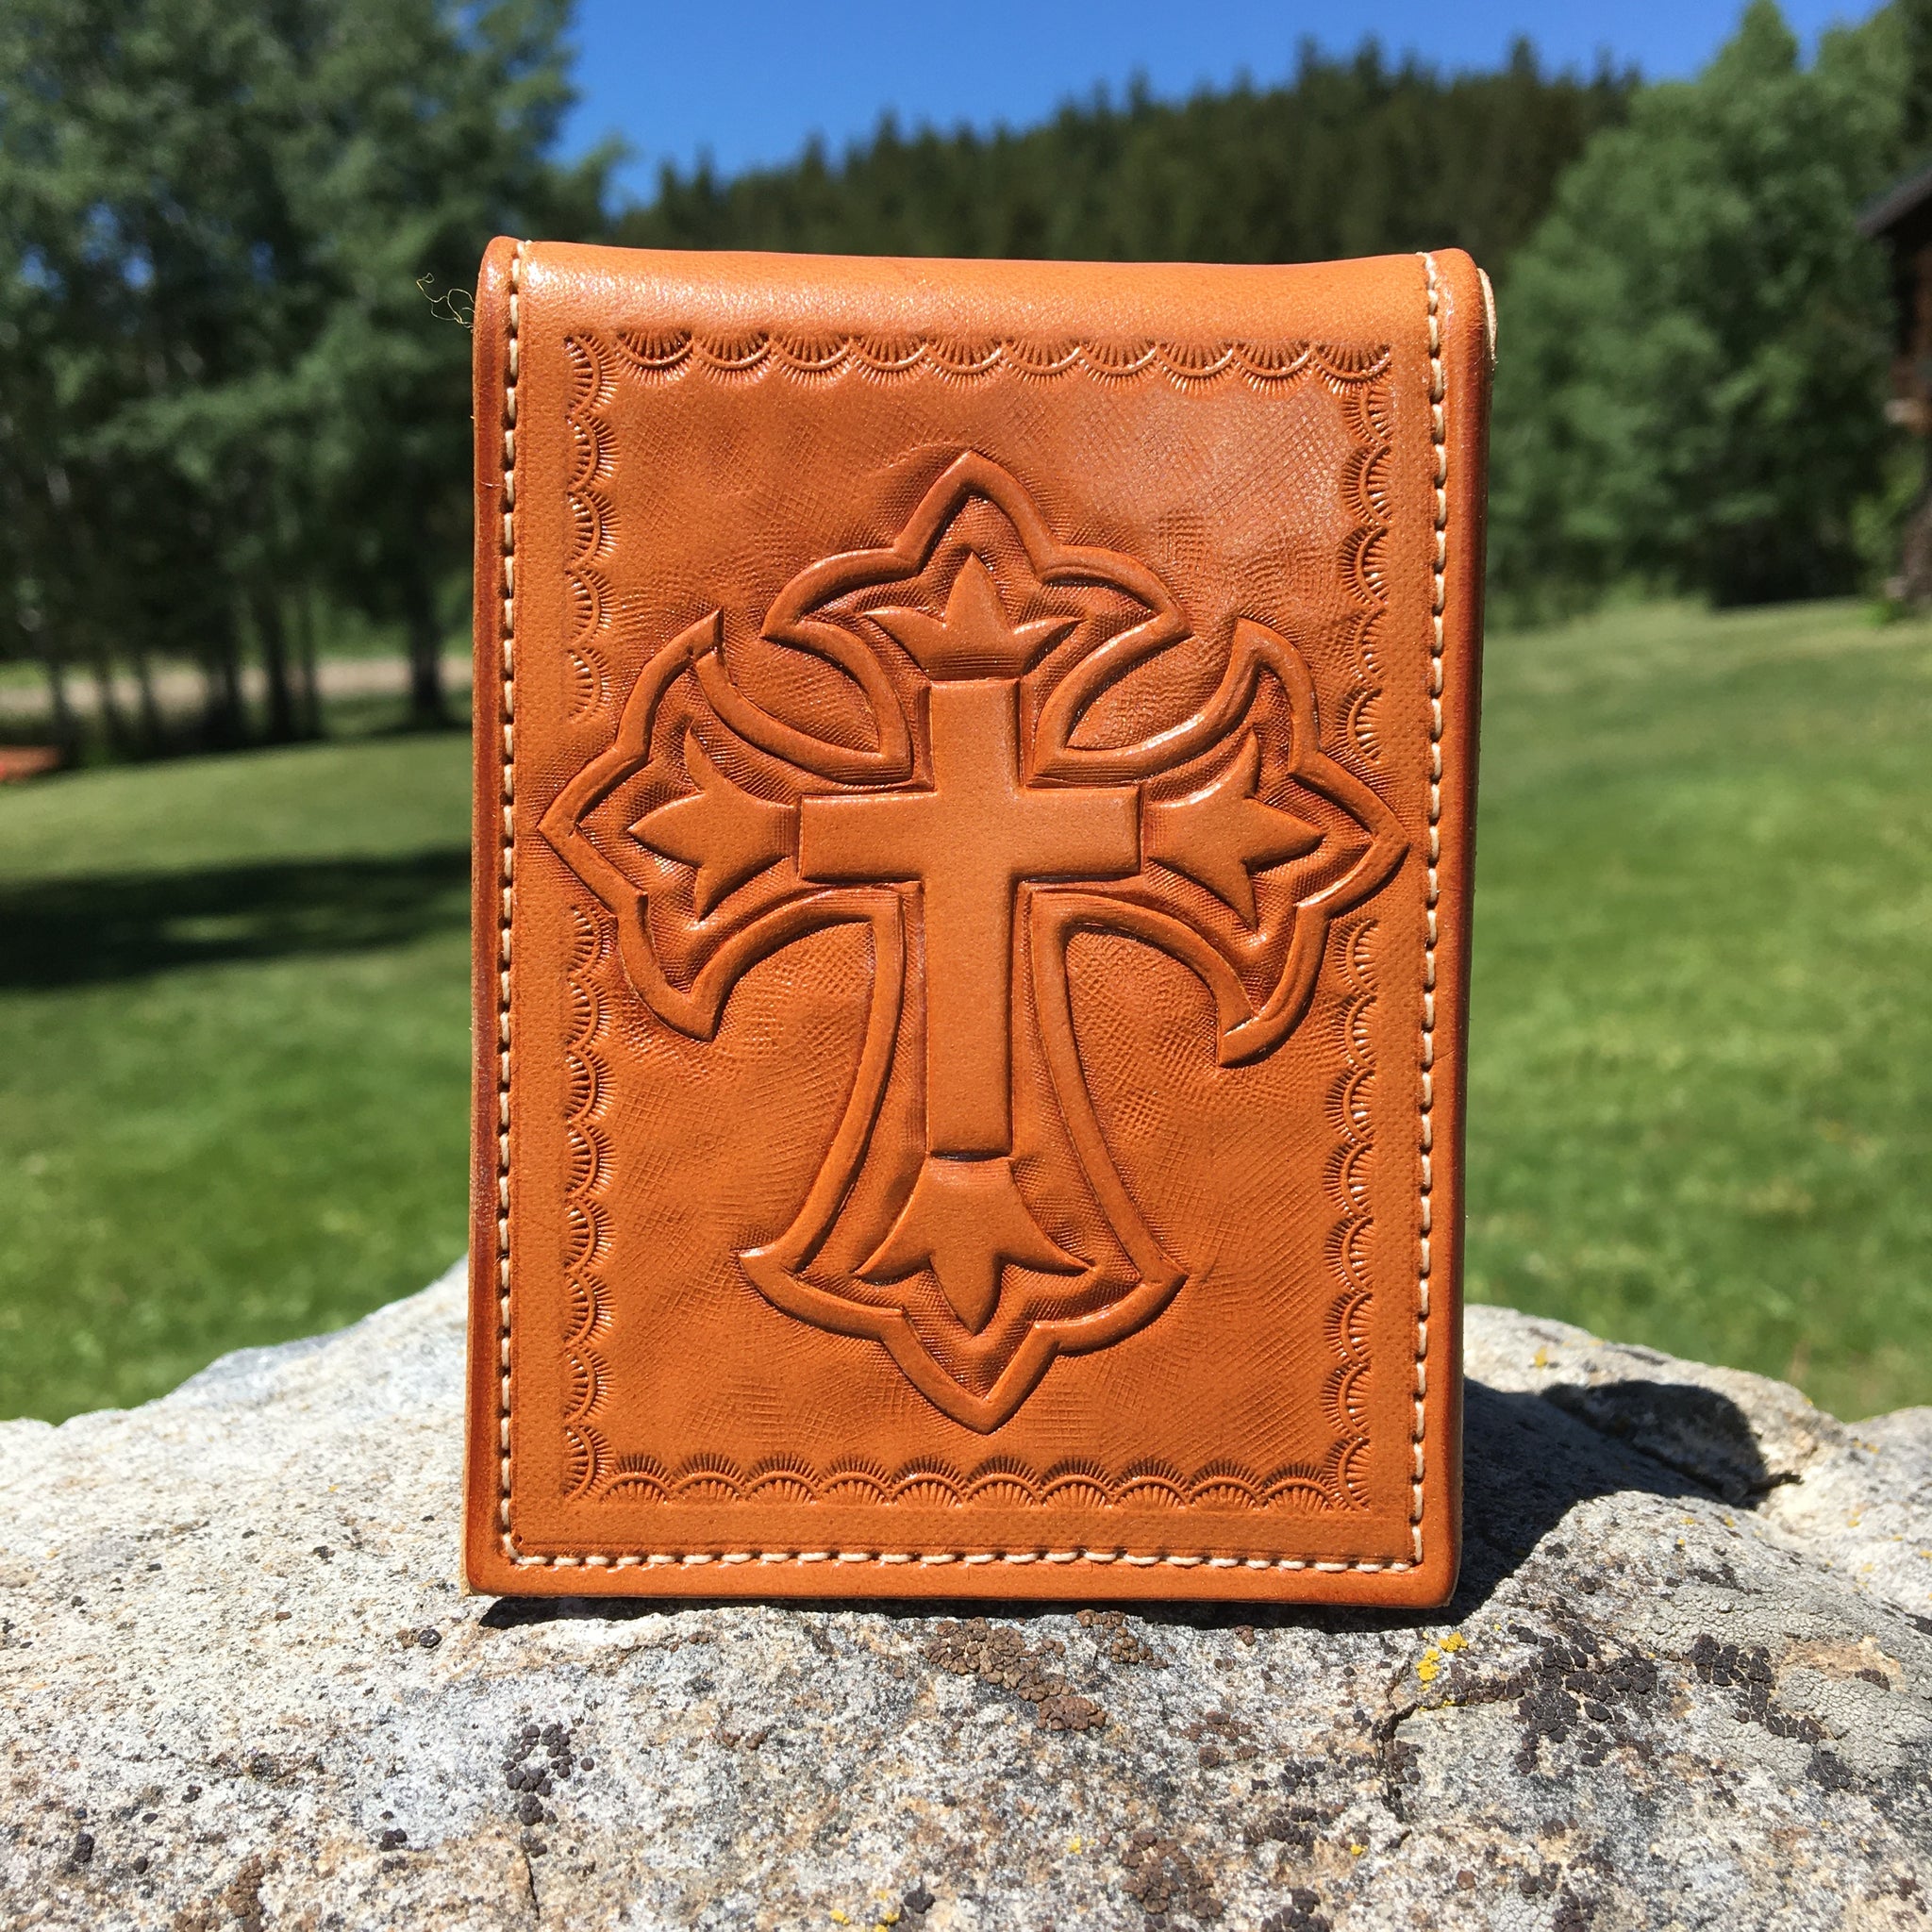 Fancy Cross Wallet with bible verse pocket